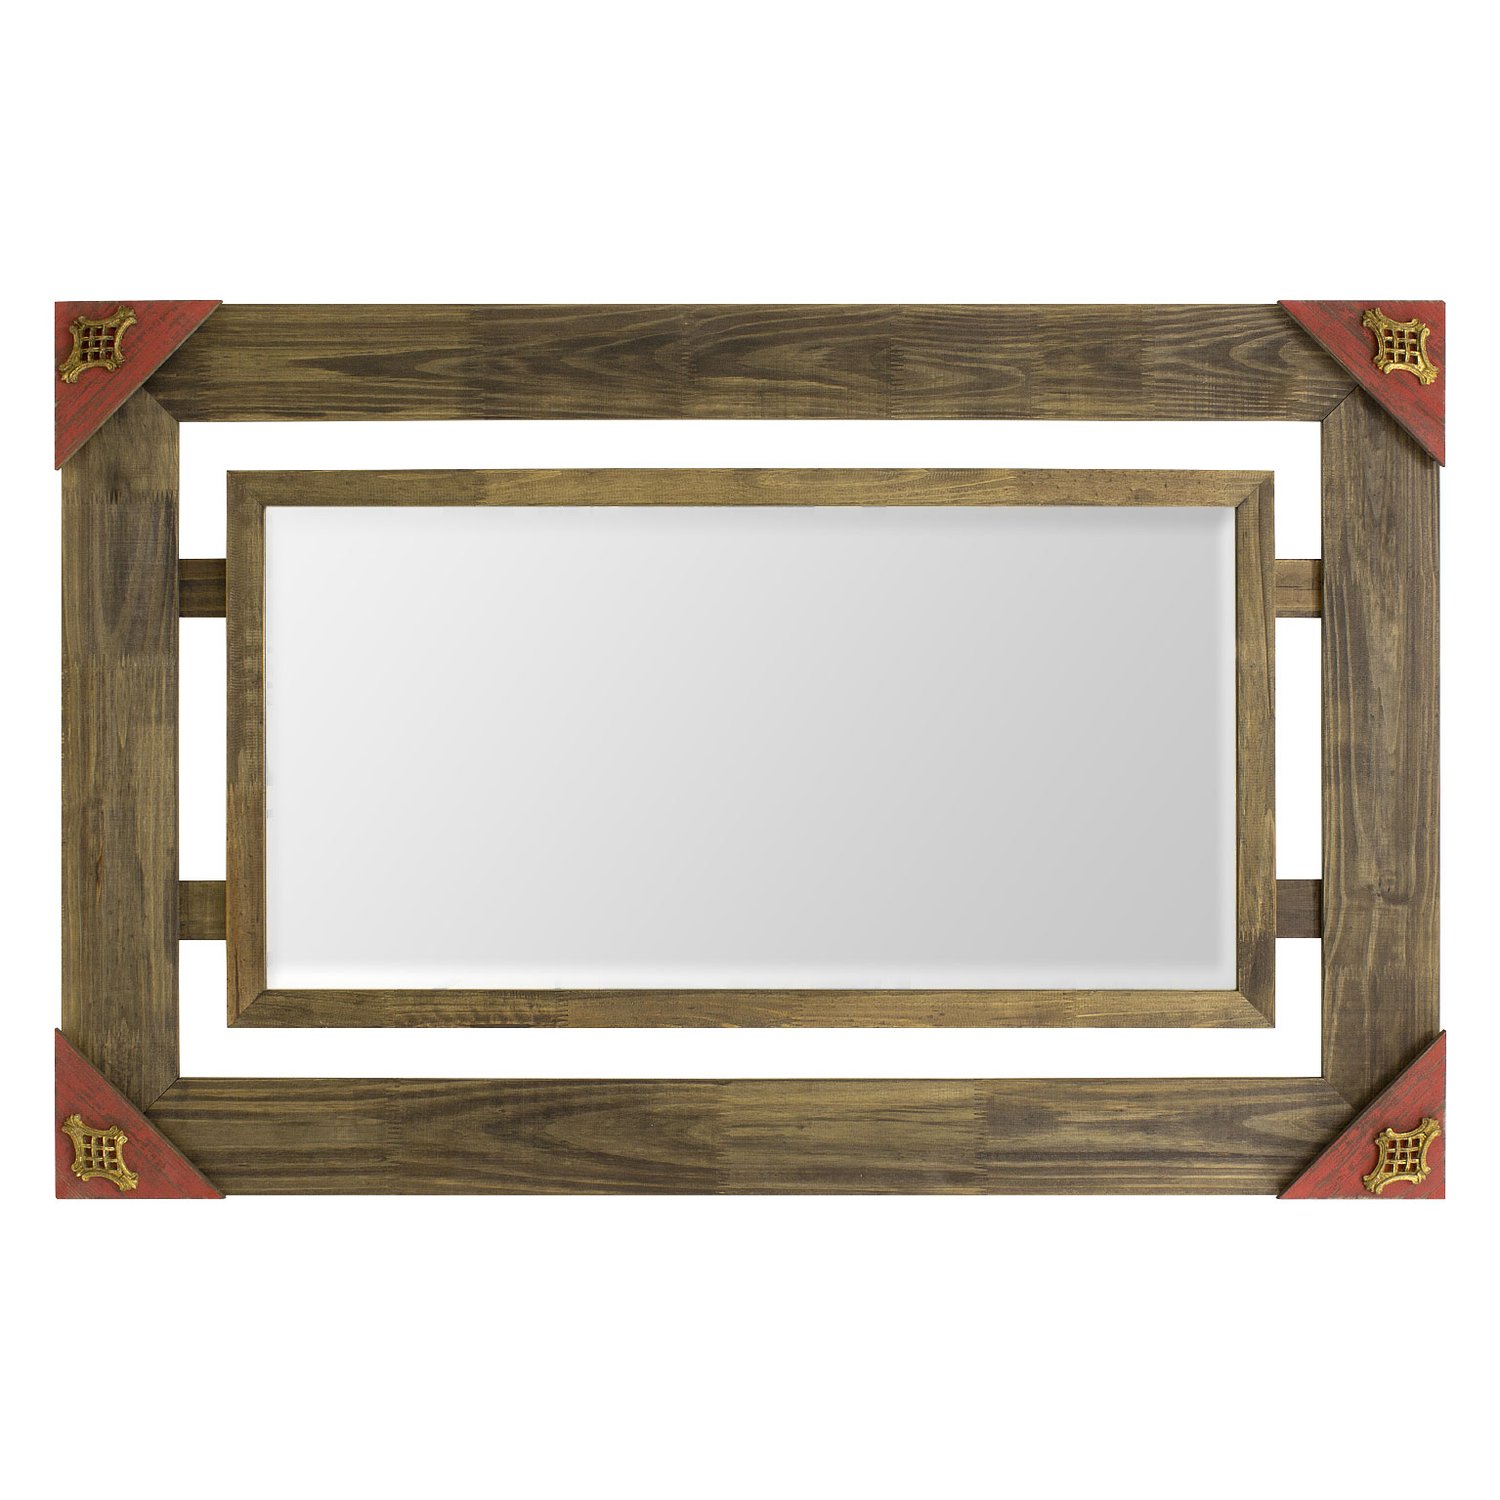 Espelho Decorativo Rústico com Moldura Marrom Vazada e Acabamento Vermelho com Apliques Dourados